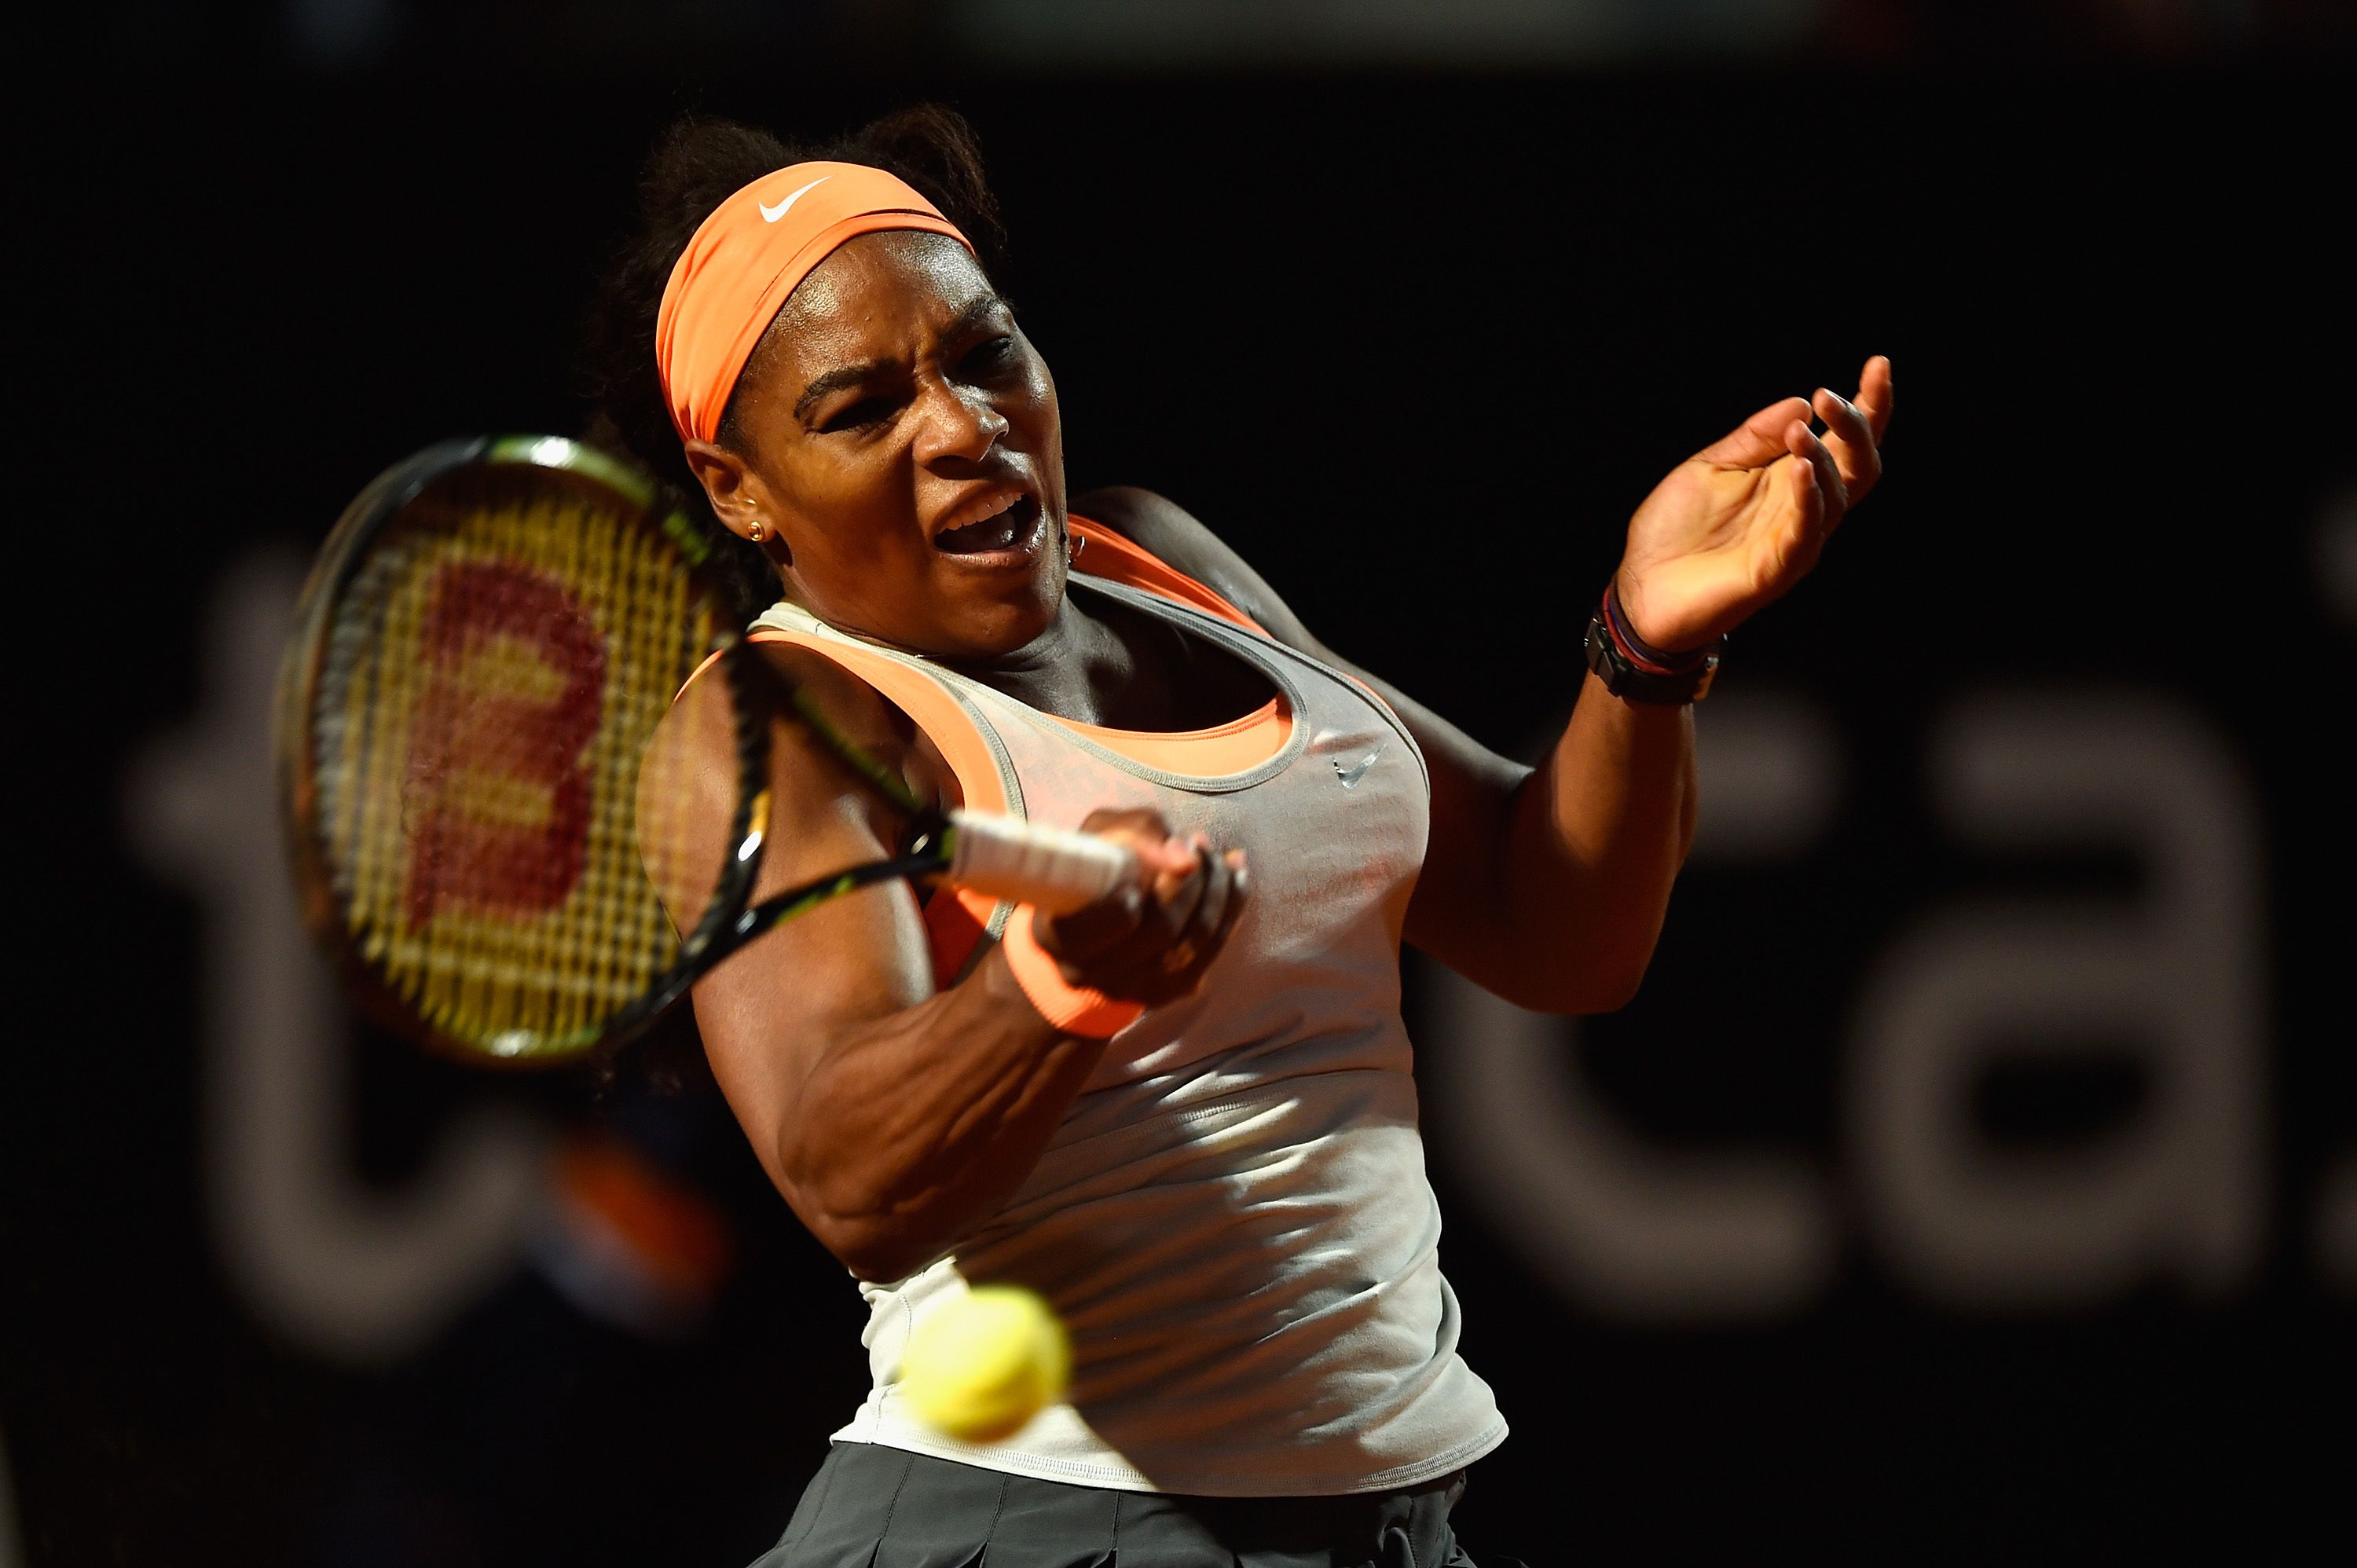 Seria Serena Williams a melhor atleta de todos os tempos?